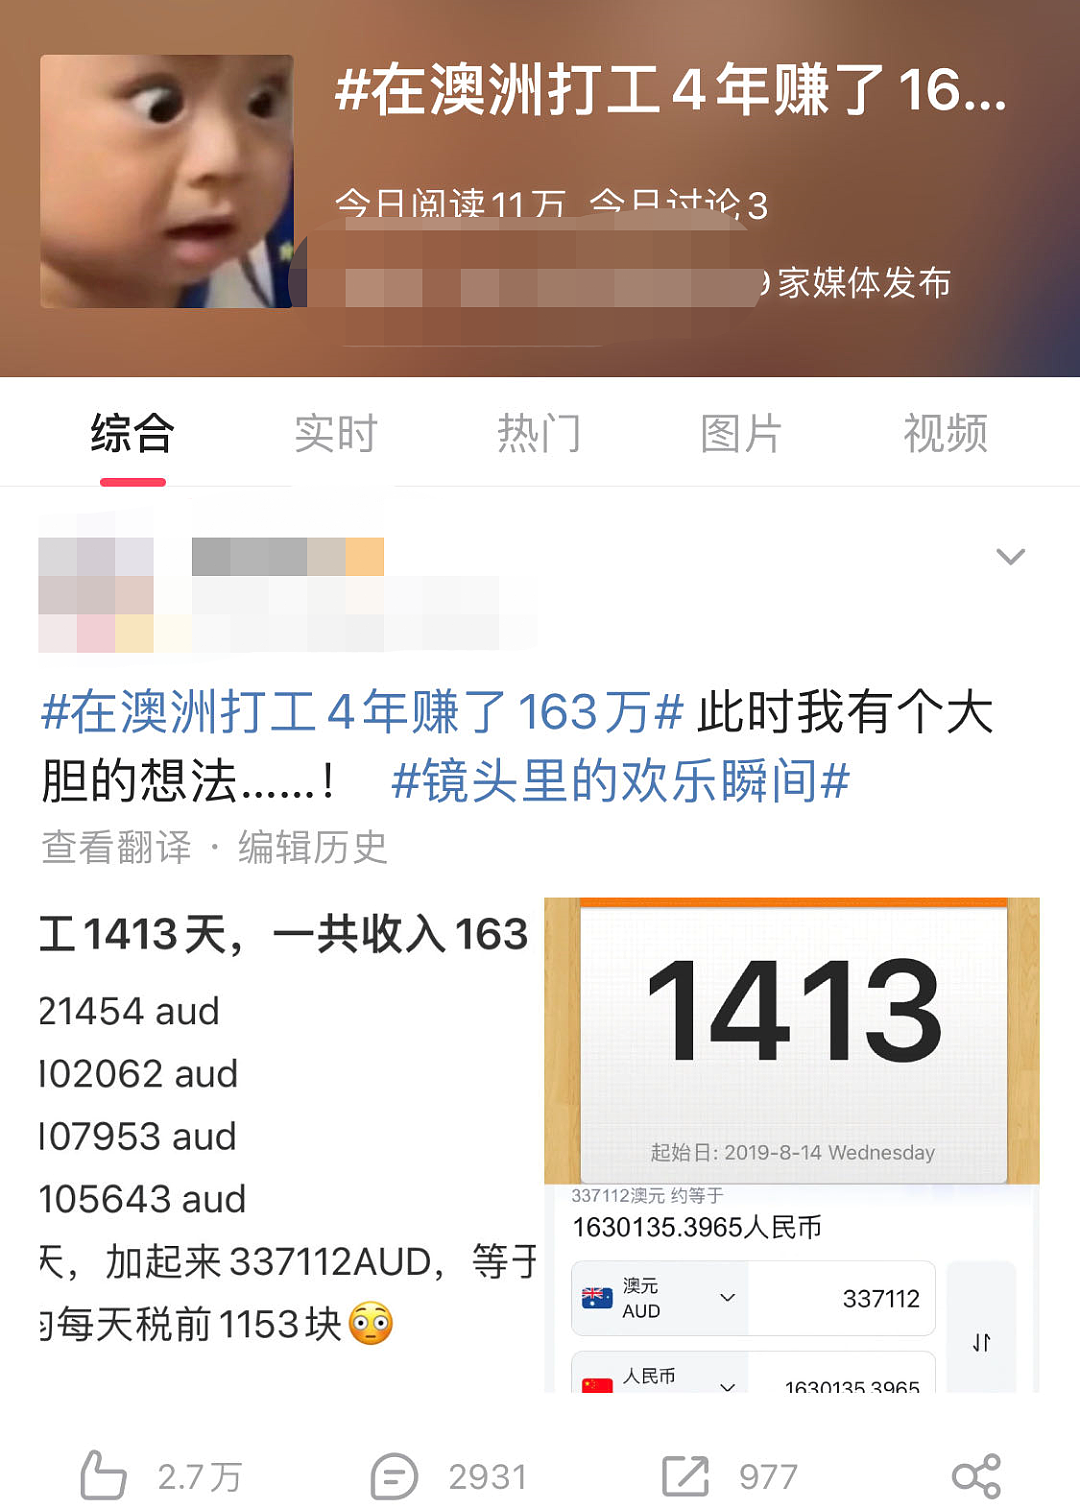 中国女生在澳打工4年赚163万？！帖子引爆社媒，网友吵翻天，还被质疑色情！在澳华人：不算多！挣的钱能带多少回国？我们算一算 - 1